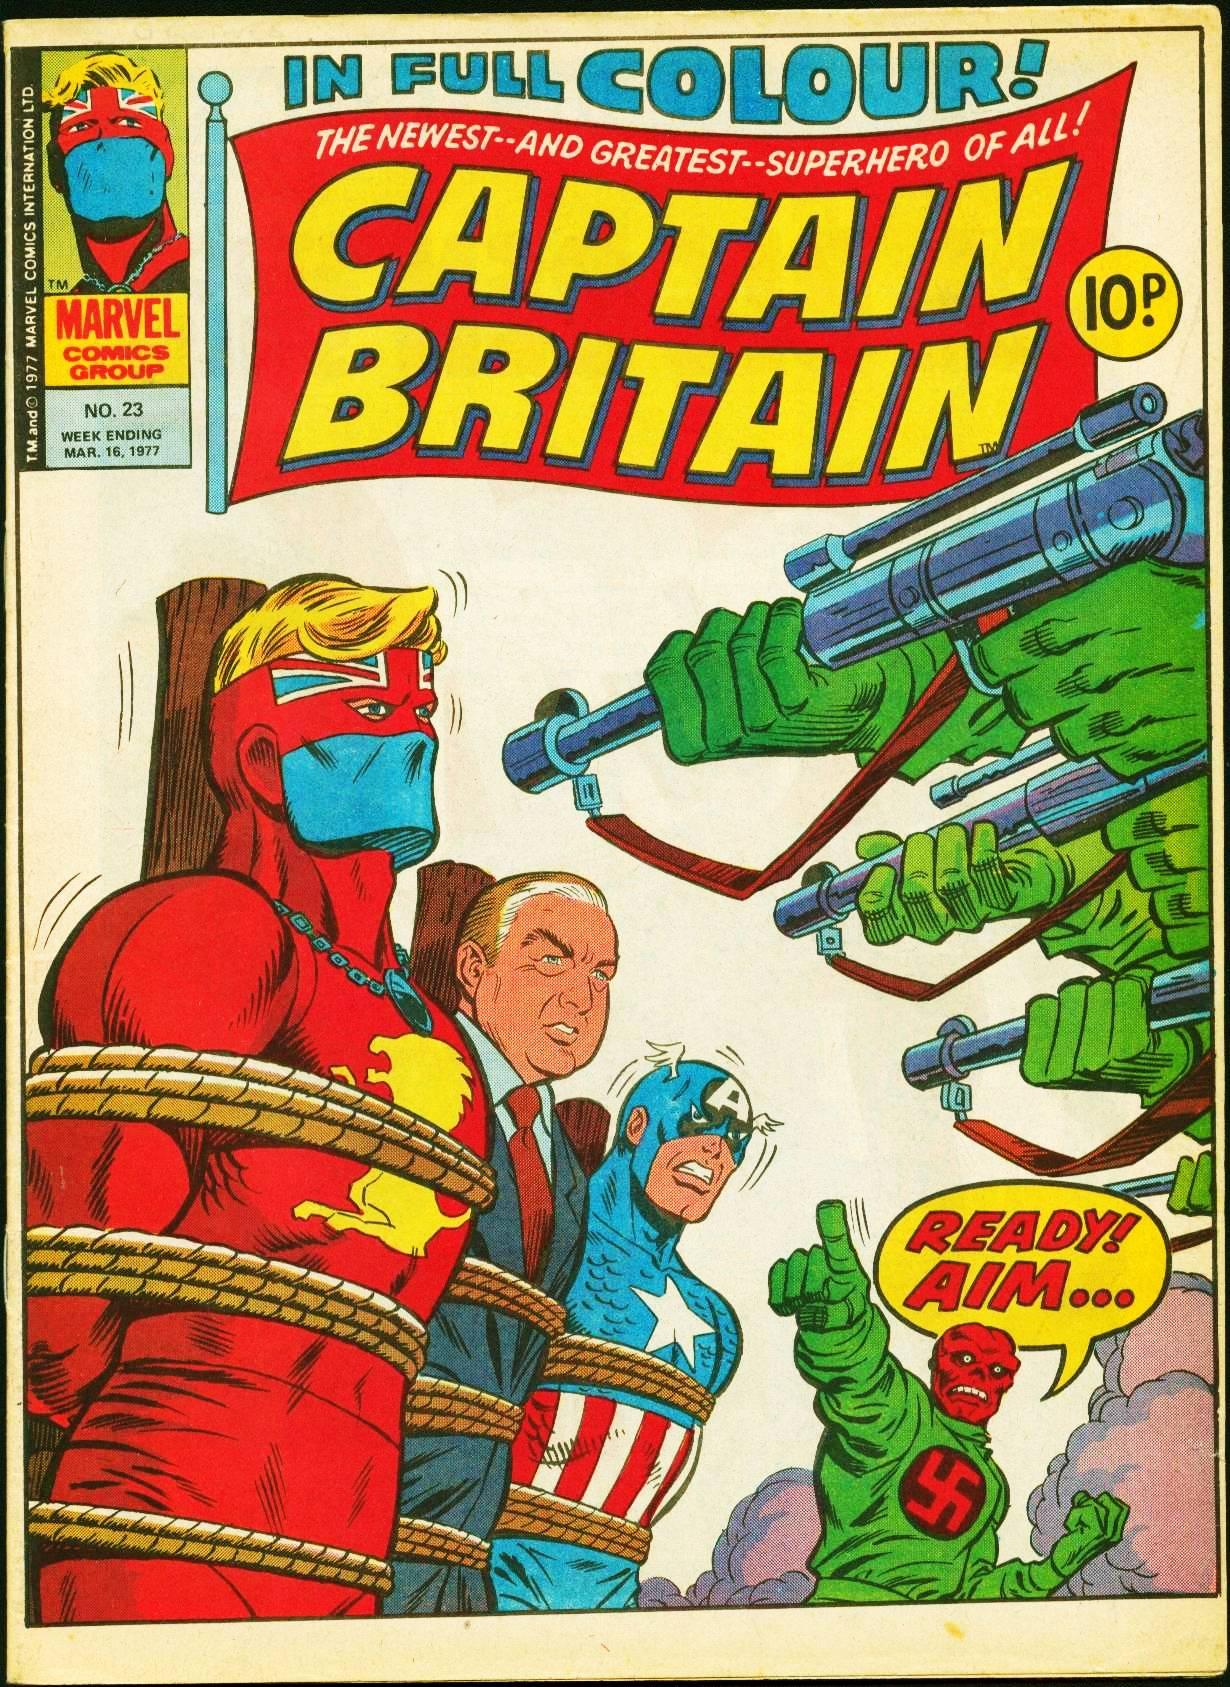 Captain Britain Vol. 1 #23